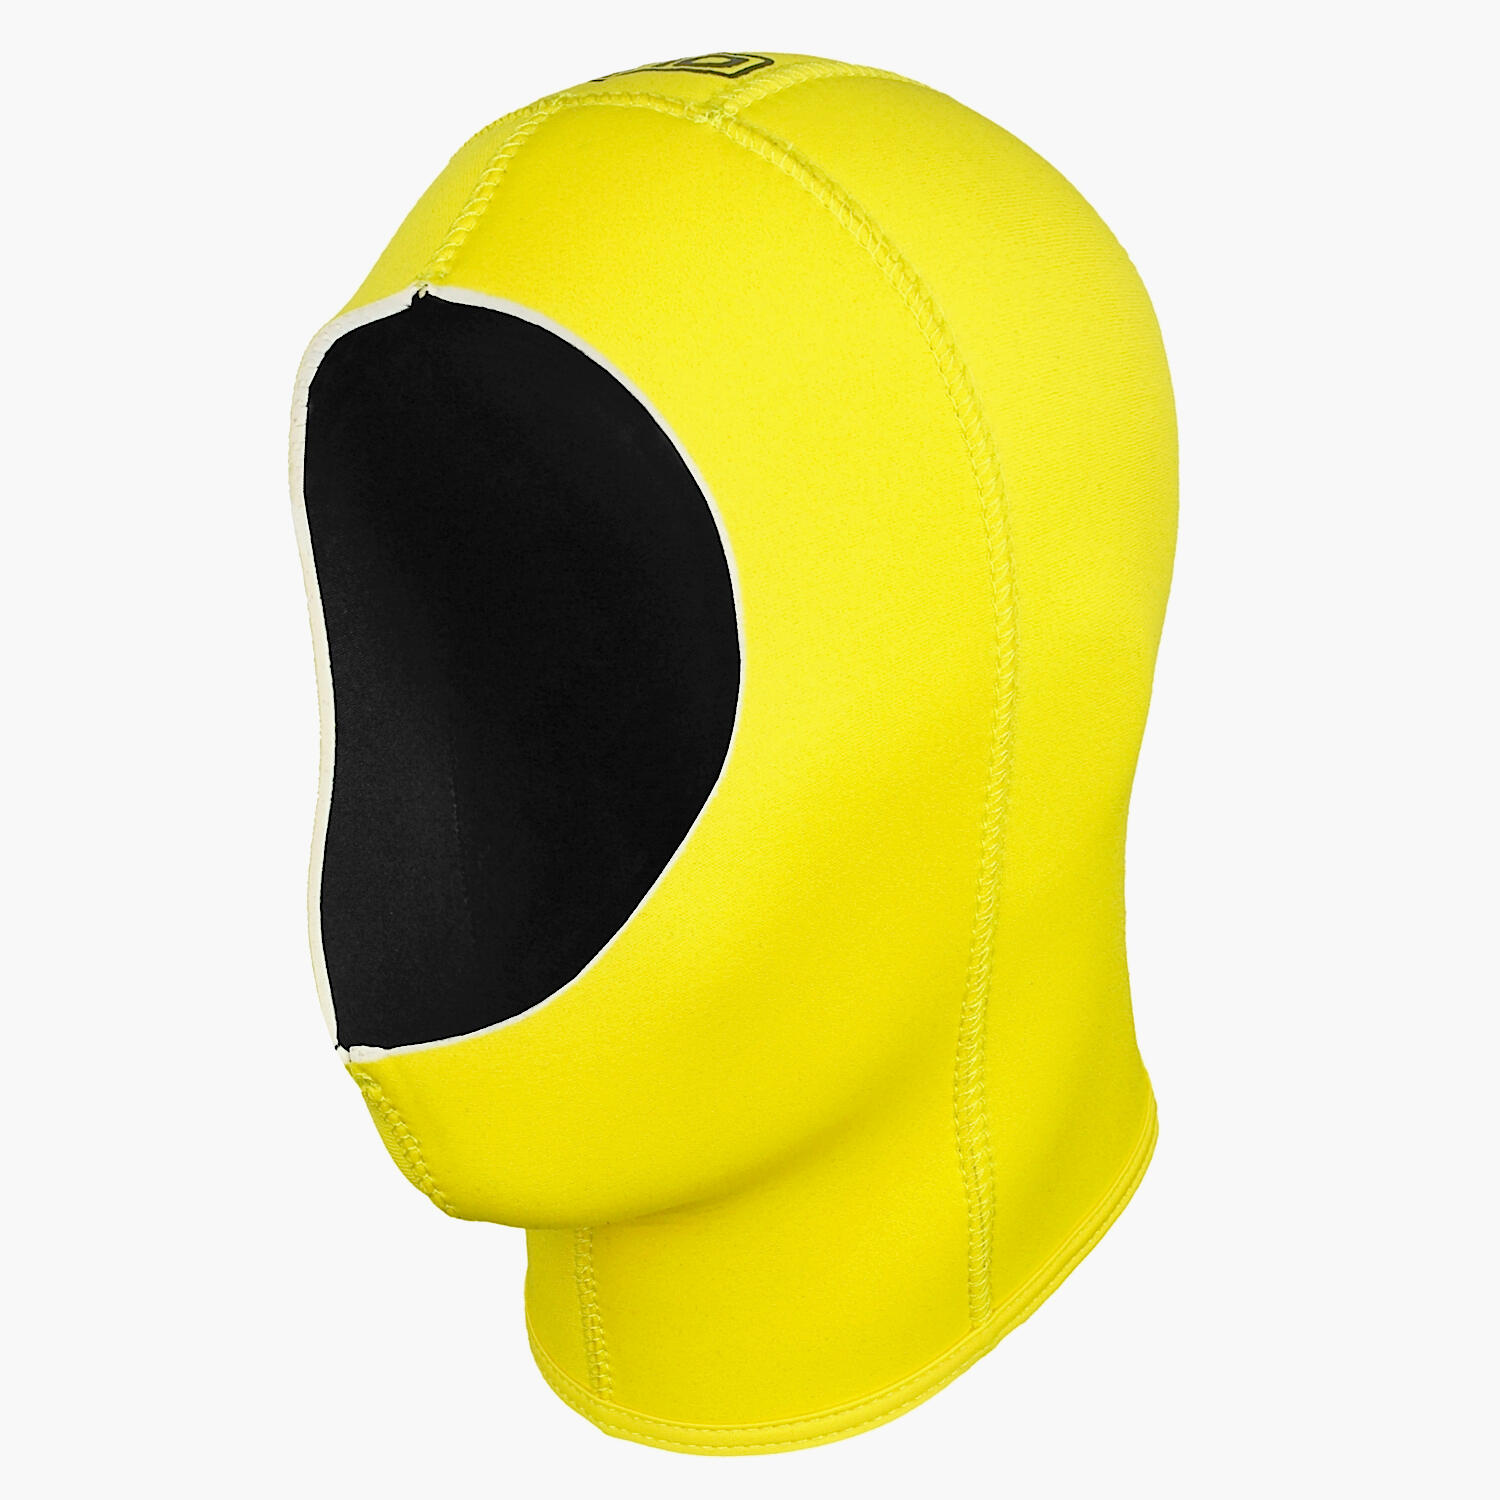 LOMO Lomo Yellow Wetsuit Hood - 5mm Hi Vis Yellow Neoprene Hood